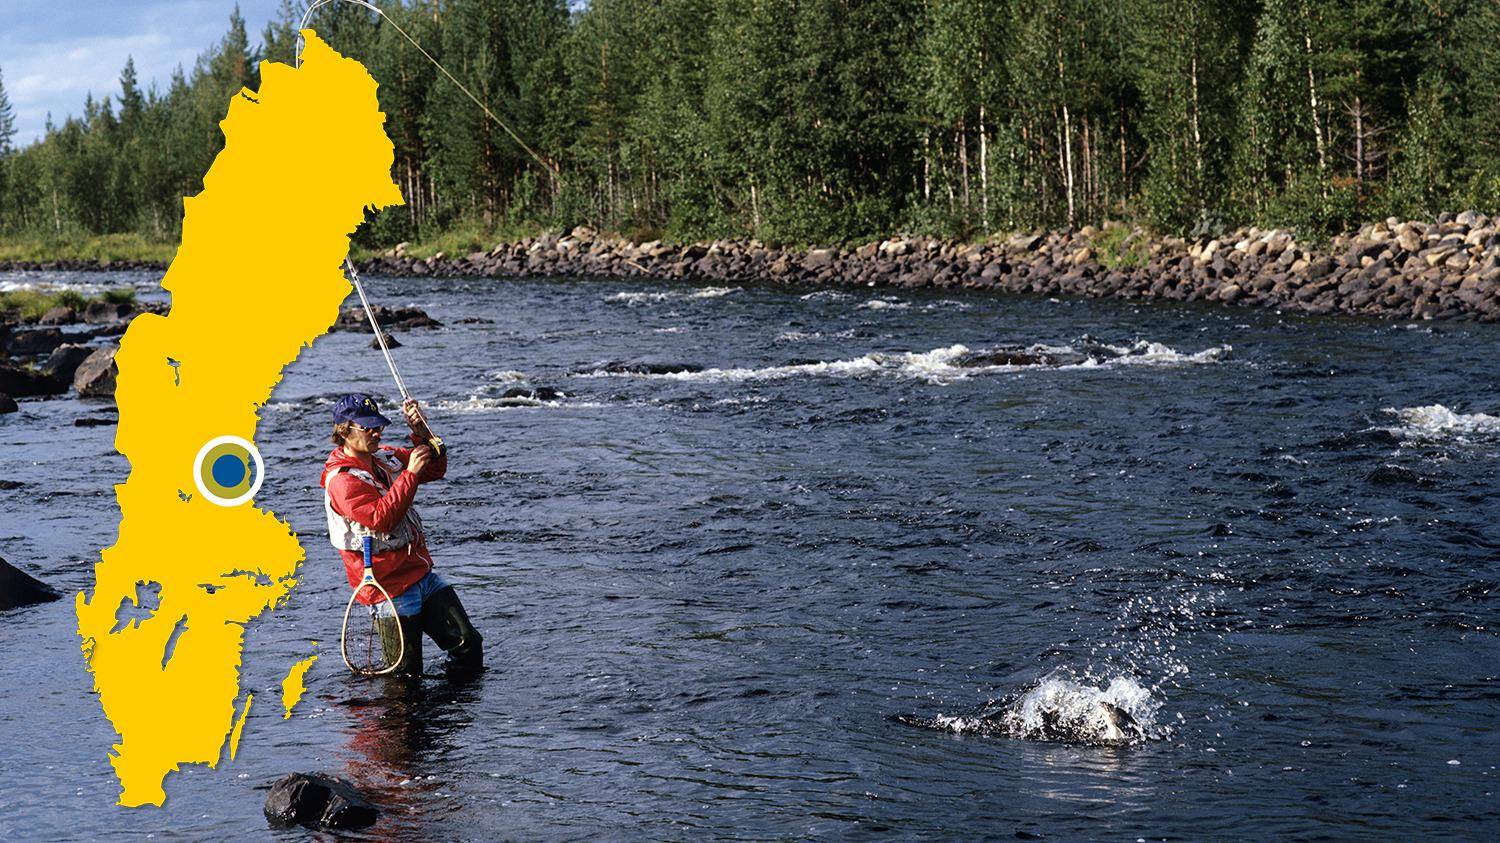 Een man staat in een rivier vliegvissen. Hij heeft net een vis gevangen en probeert hem binnen te halen. Er is een gele kaart van Zweden met een blauwe stip die de locatie van Voxnan aangeeft.